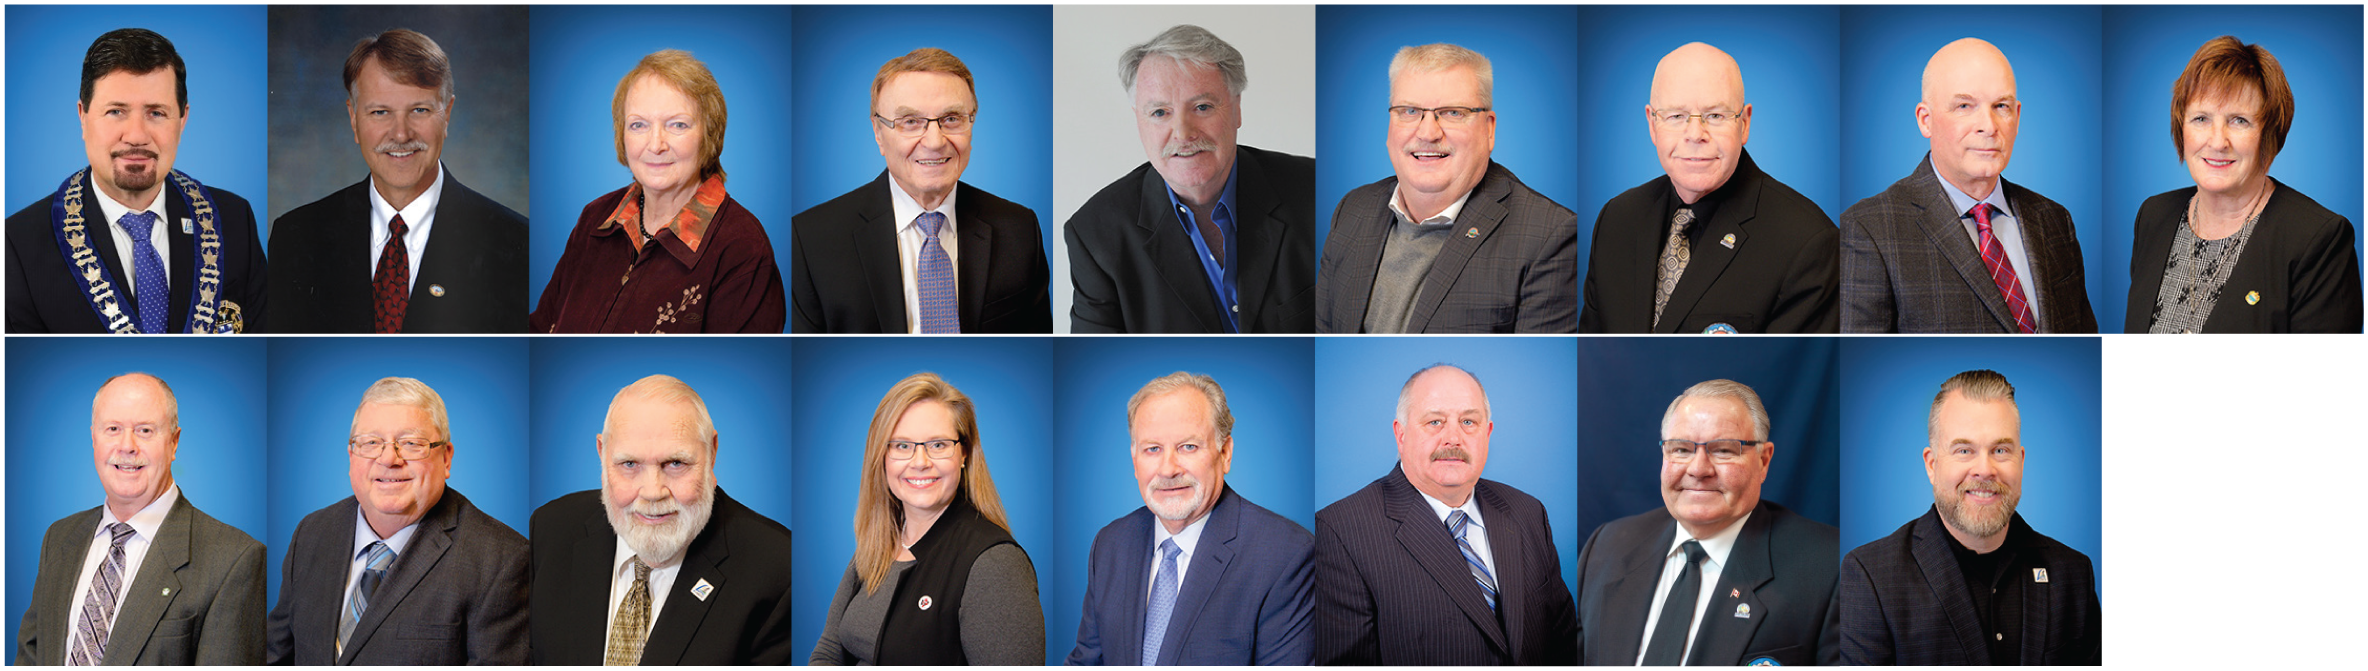 Lambton County Councillors 2021 - 2022